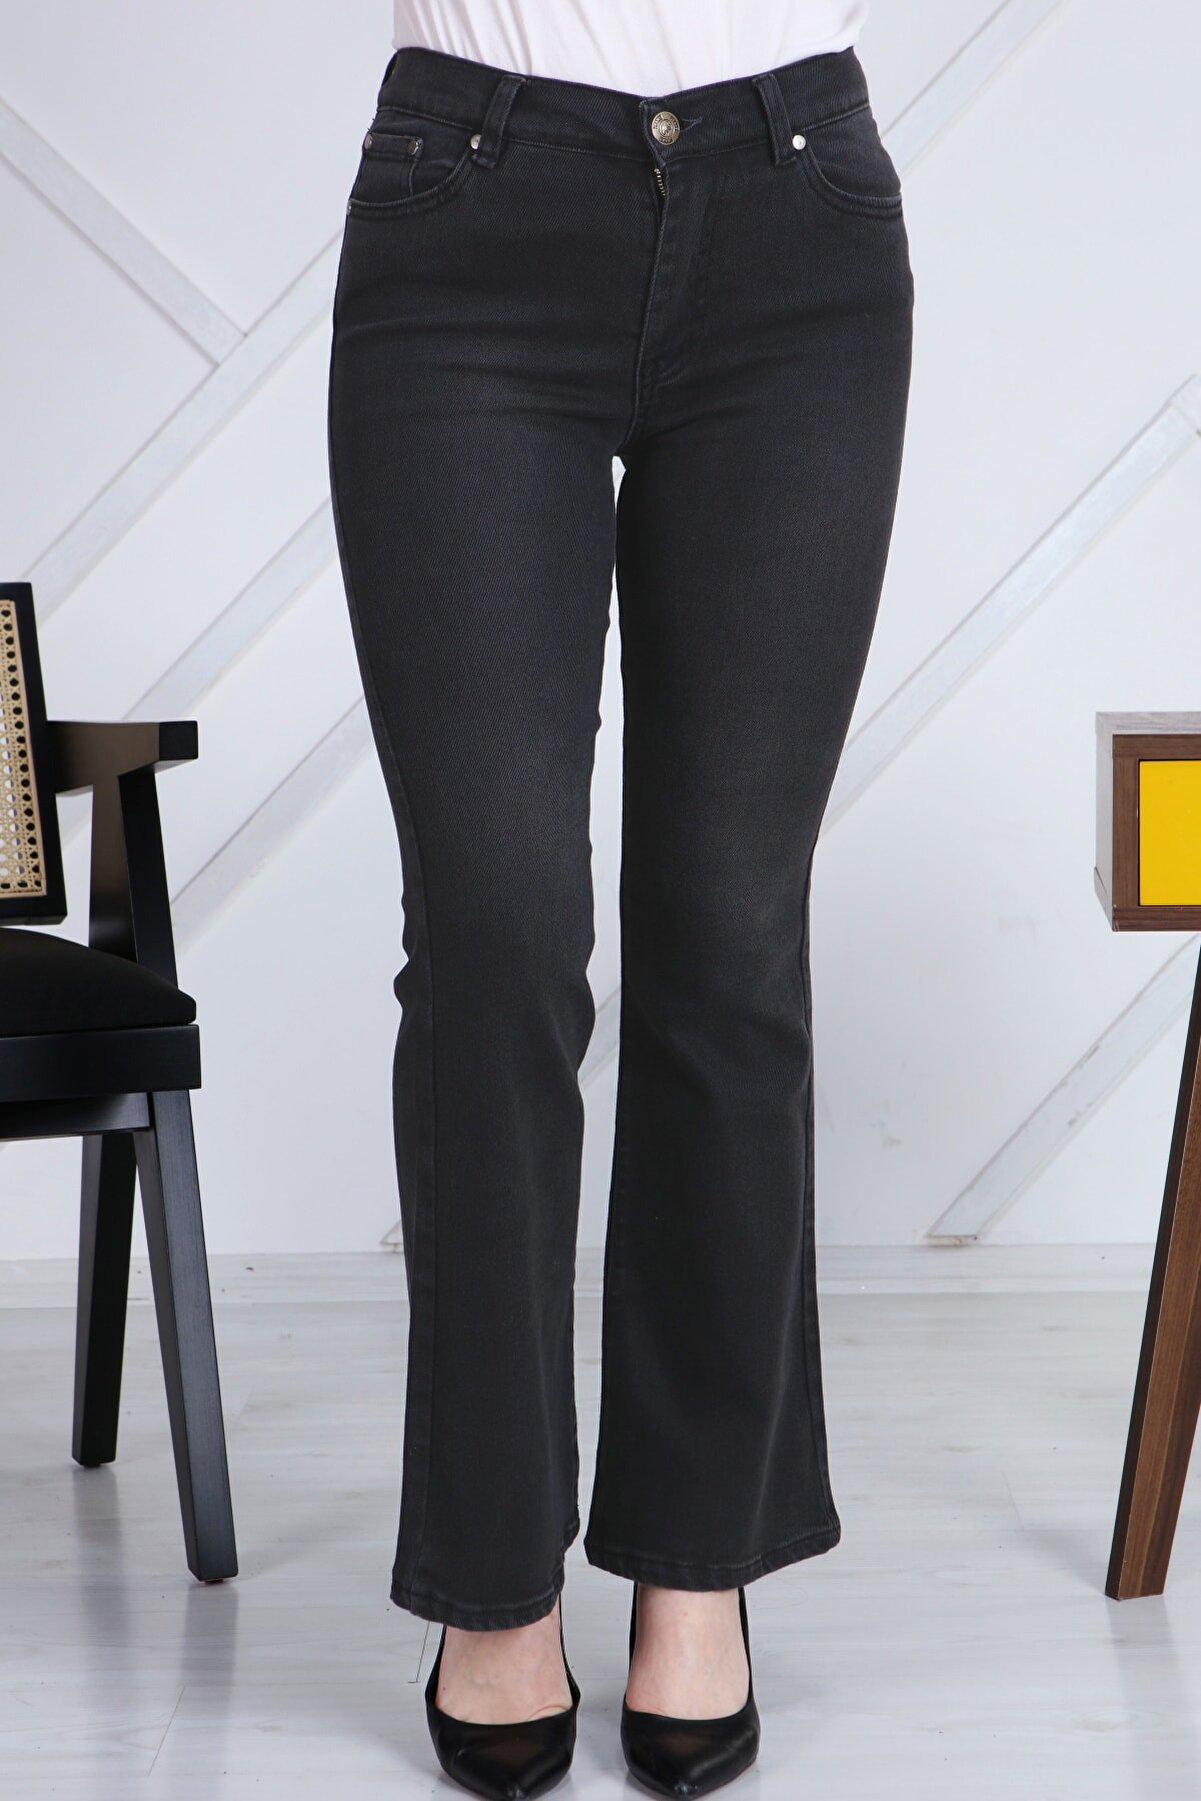 Gül Moda Antrasit Ispanyol Paça Likralı Yüksek Bel Kot Pantolon Jeans G00ipsi